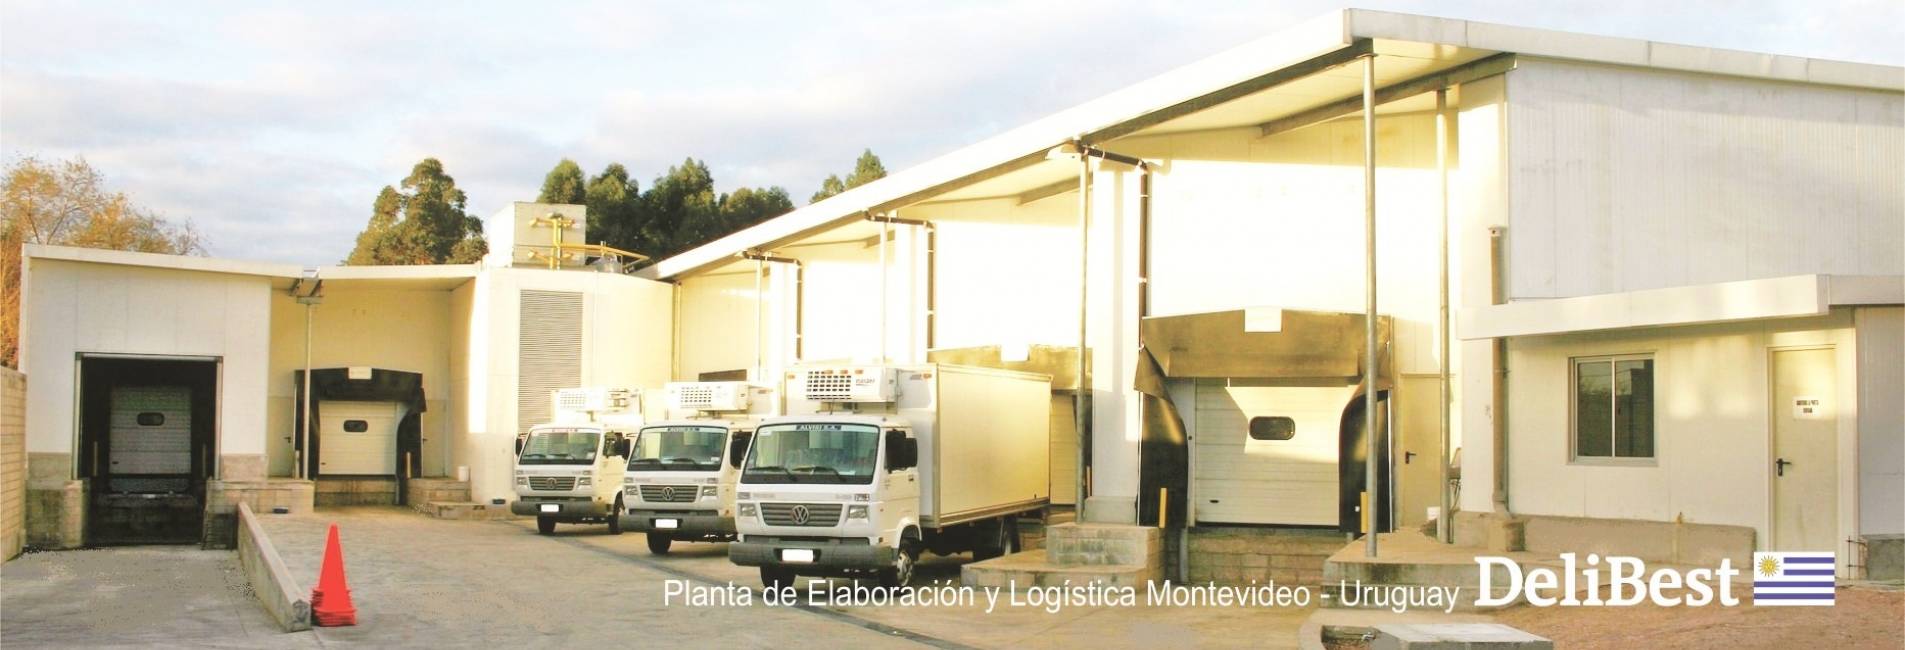 Planta de Elaboracin Modelo en Uruguay Innovacin, Desarrollo y Confiabilidad